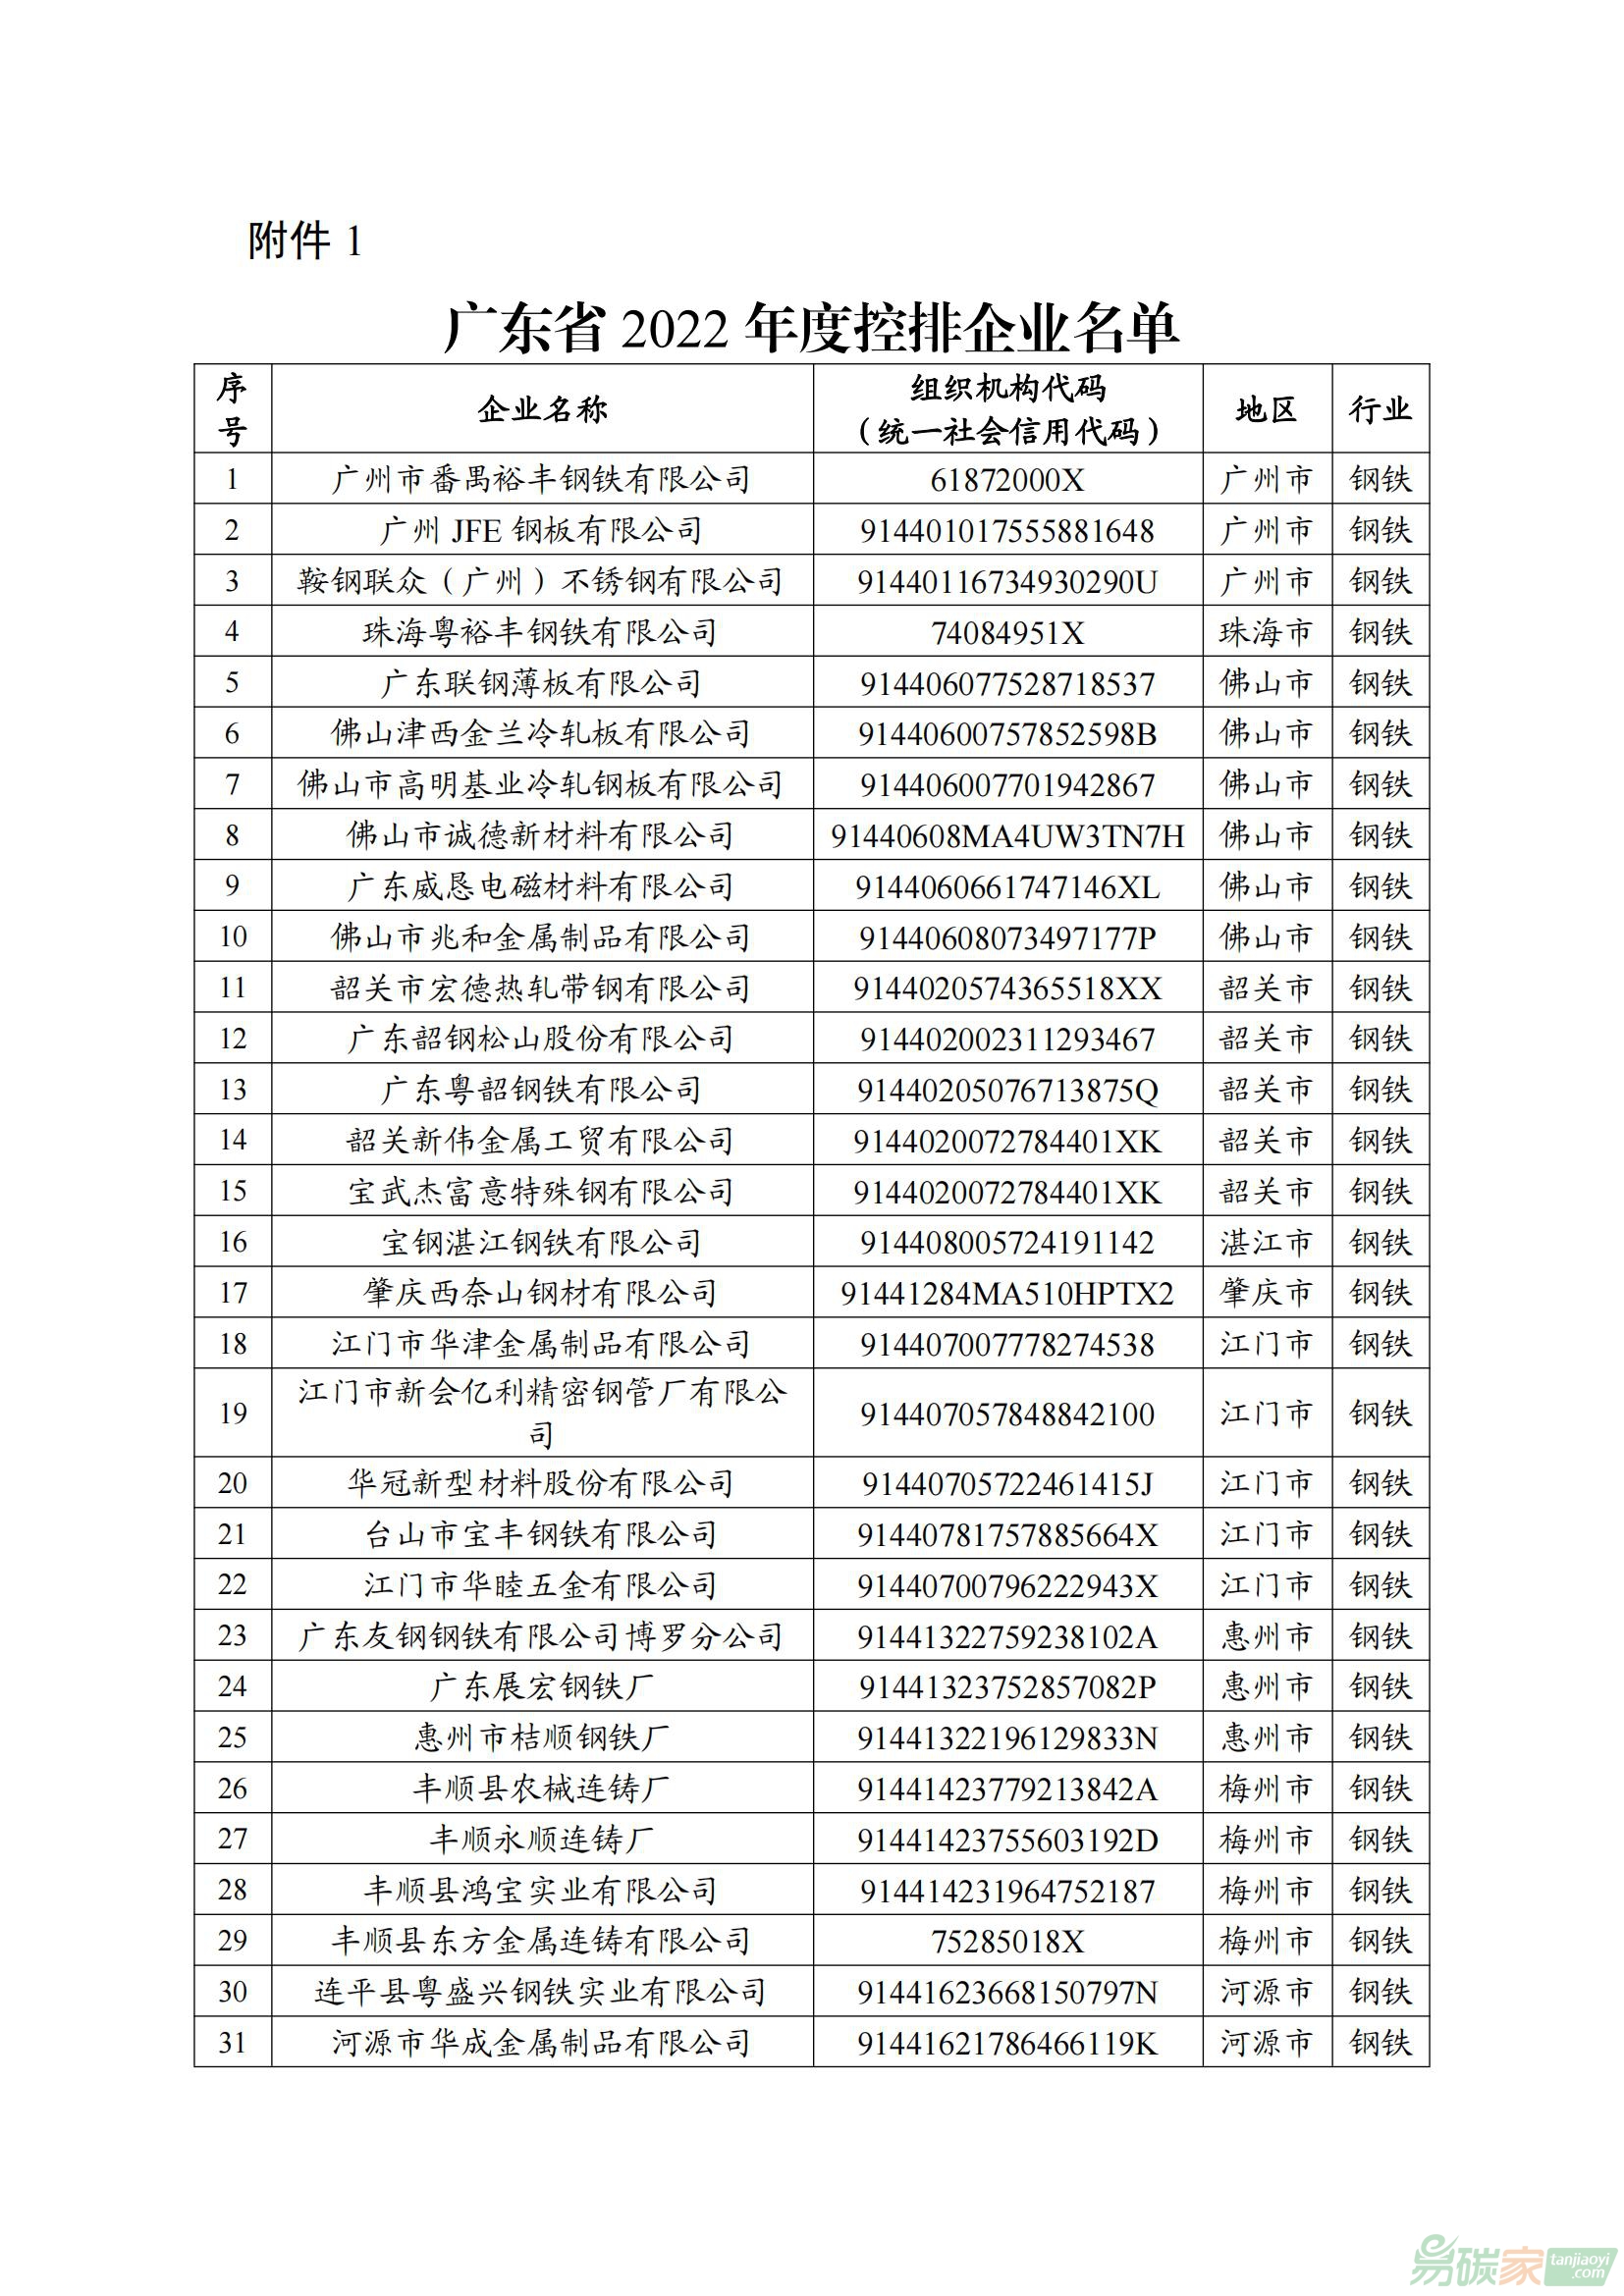 廣東省2022年度控排企業名單